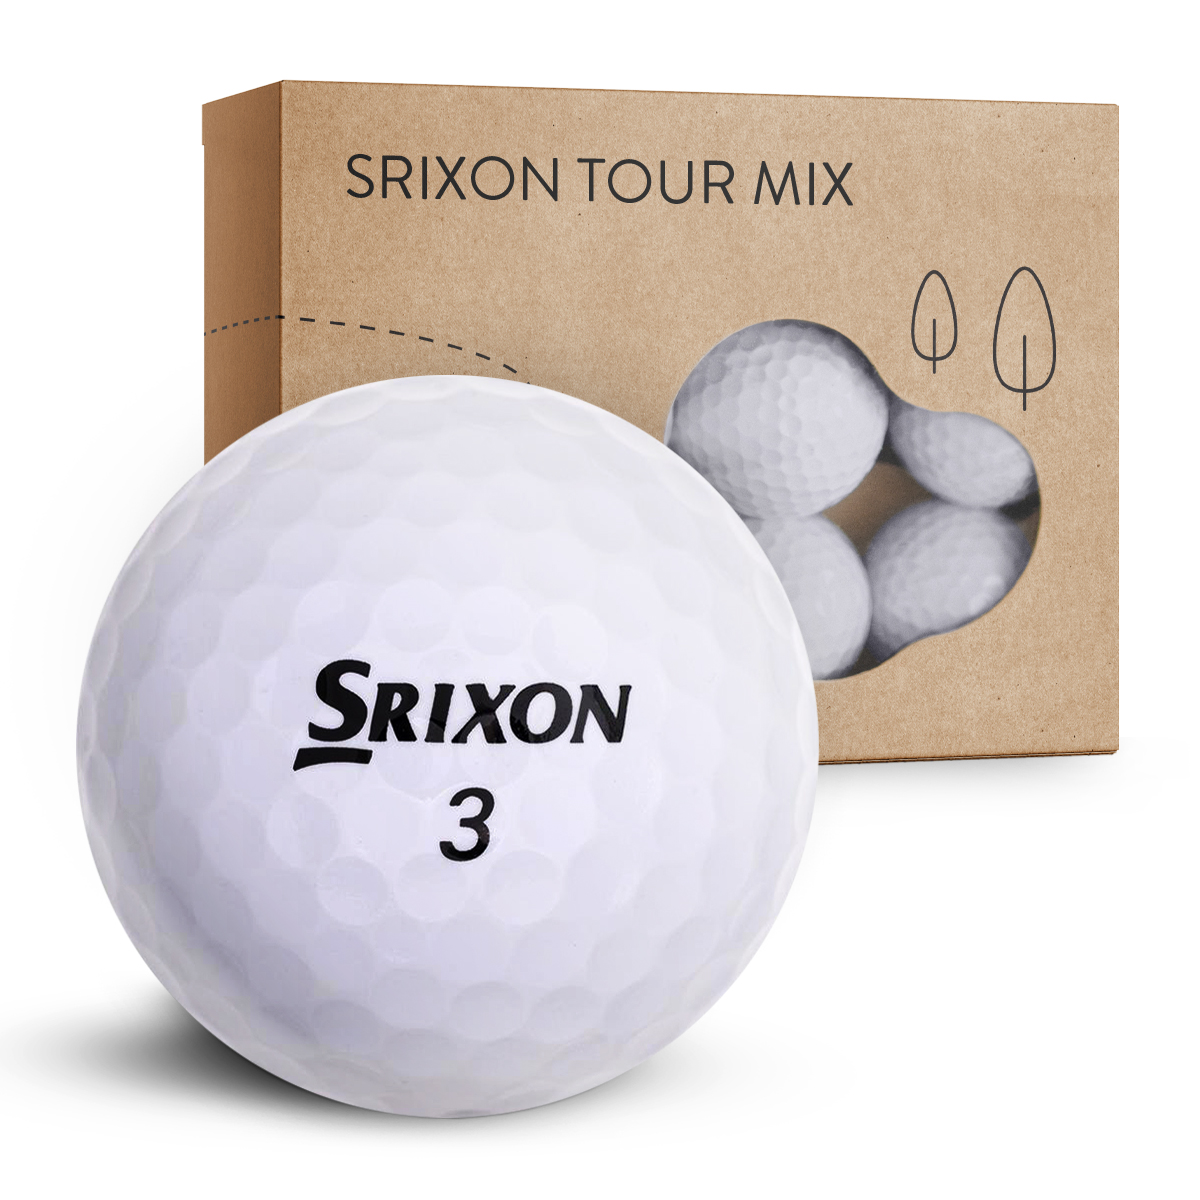 Srixon Tour Mix